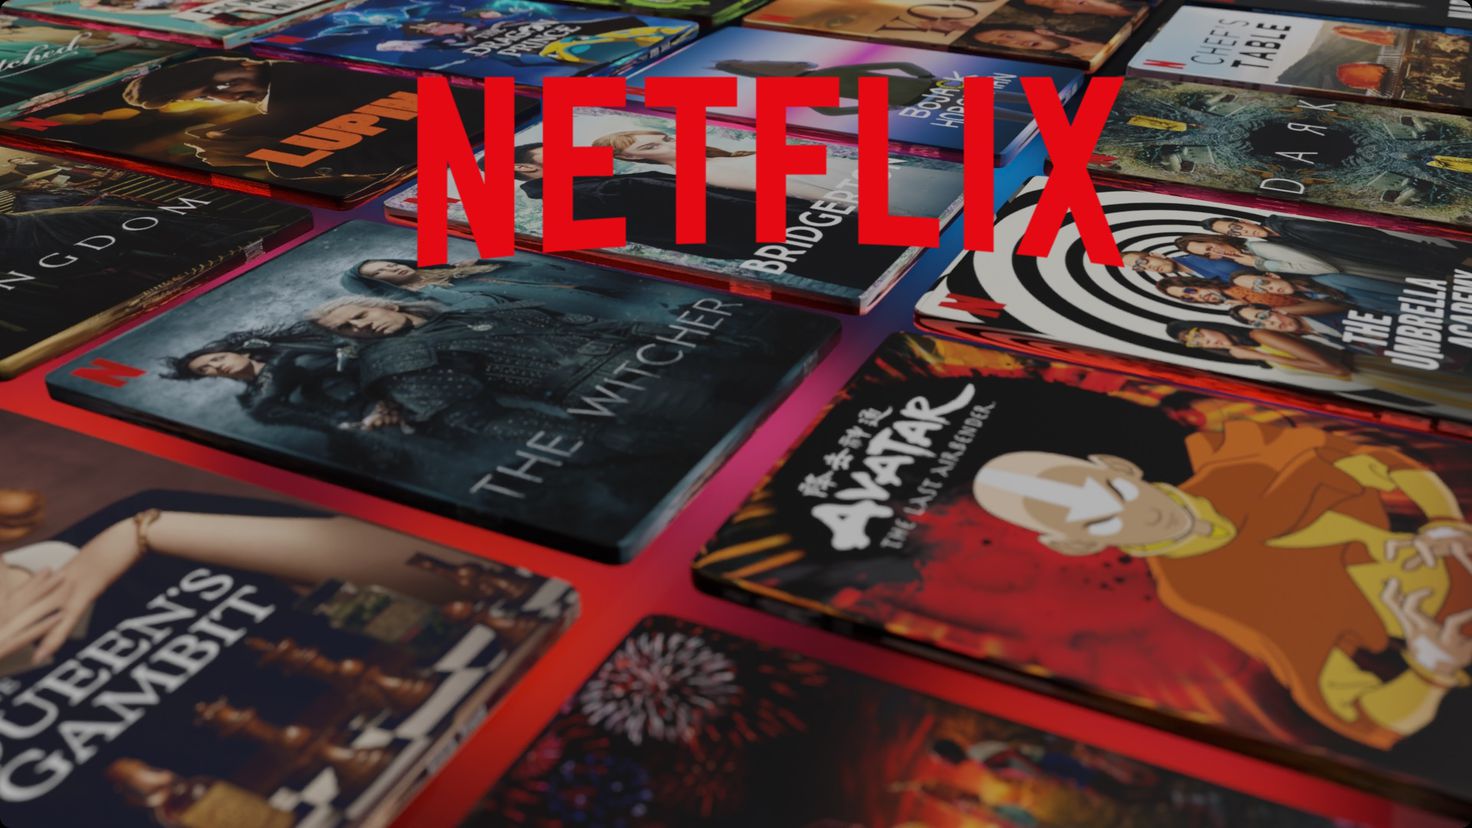 Netflix más barato: a mitad de precio con un nuevo plan de 1 año en pruebas  - Meristation